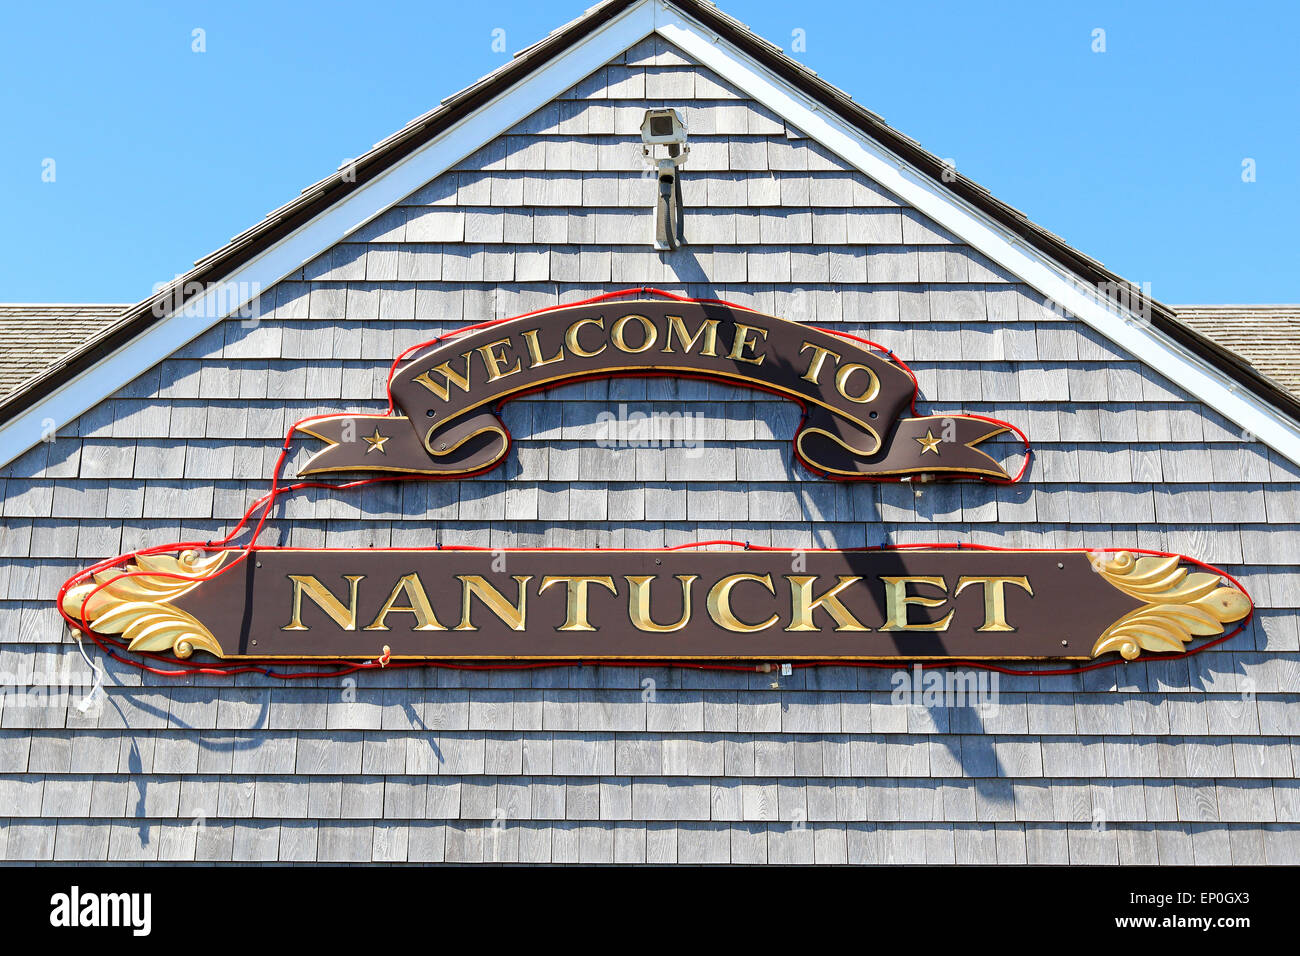 Sur l'île de Nantucket Nantucket Massachusetts. Bienvenue à Nantucket signe en ferry terminal. Banque D'Images